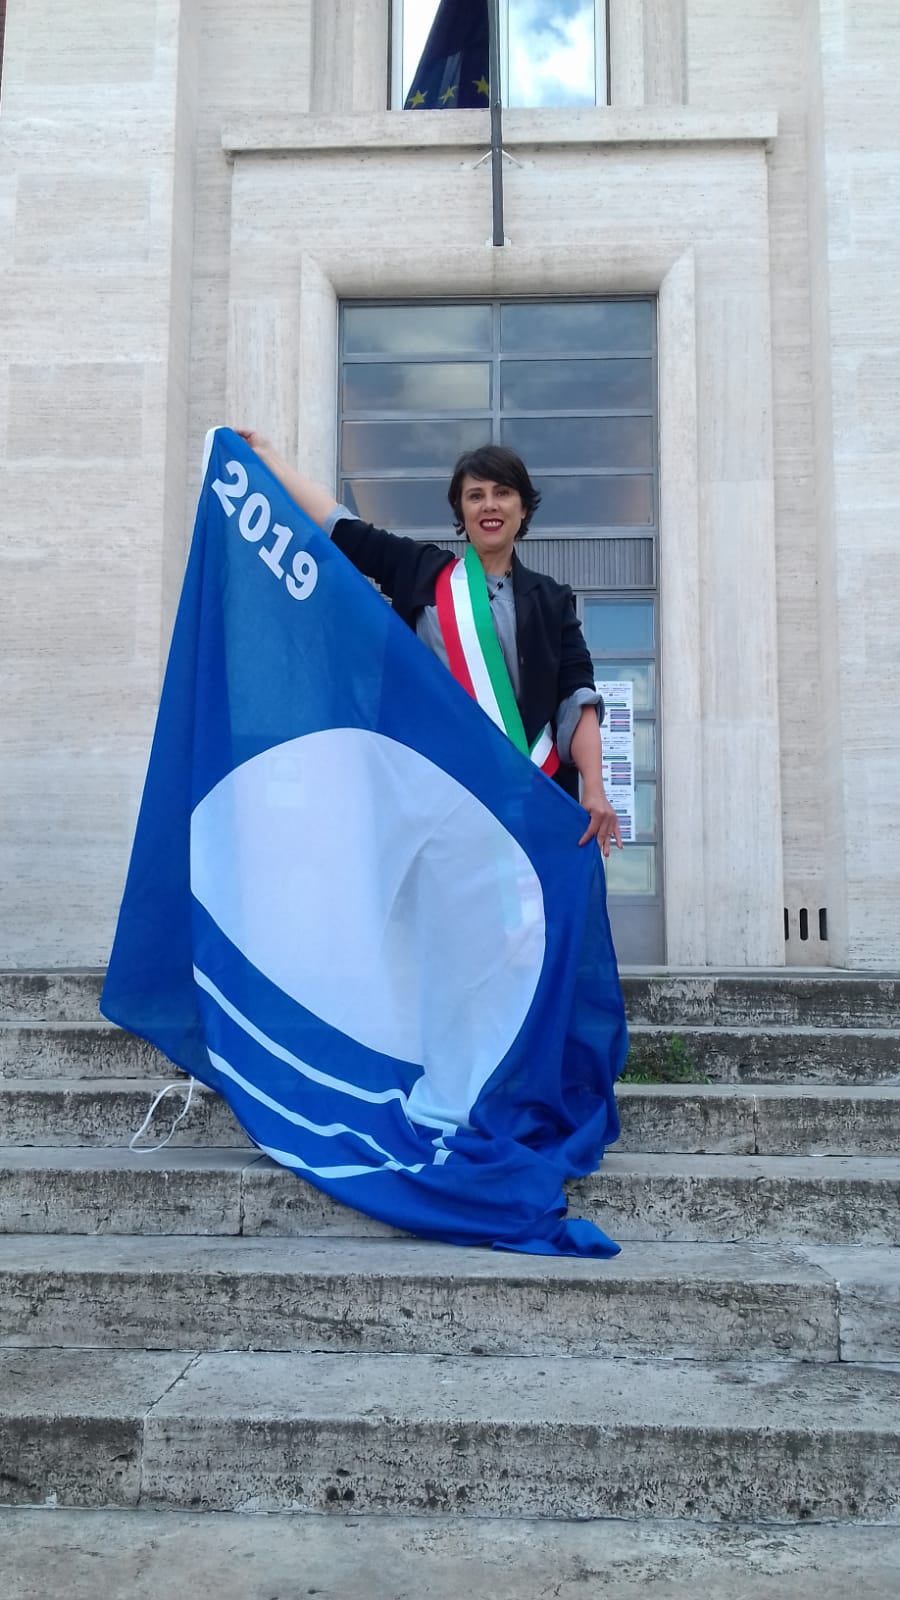 Ventiduesima bandiera blu consecutiva per la città di Viareggio